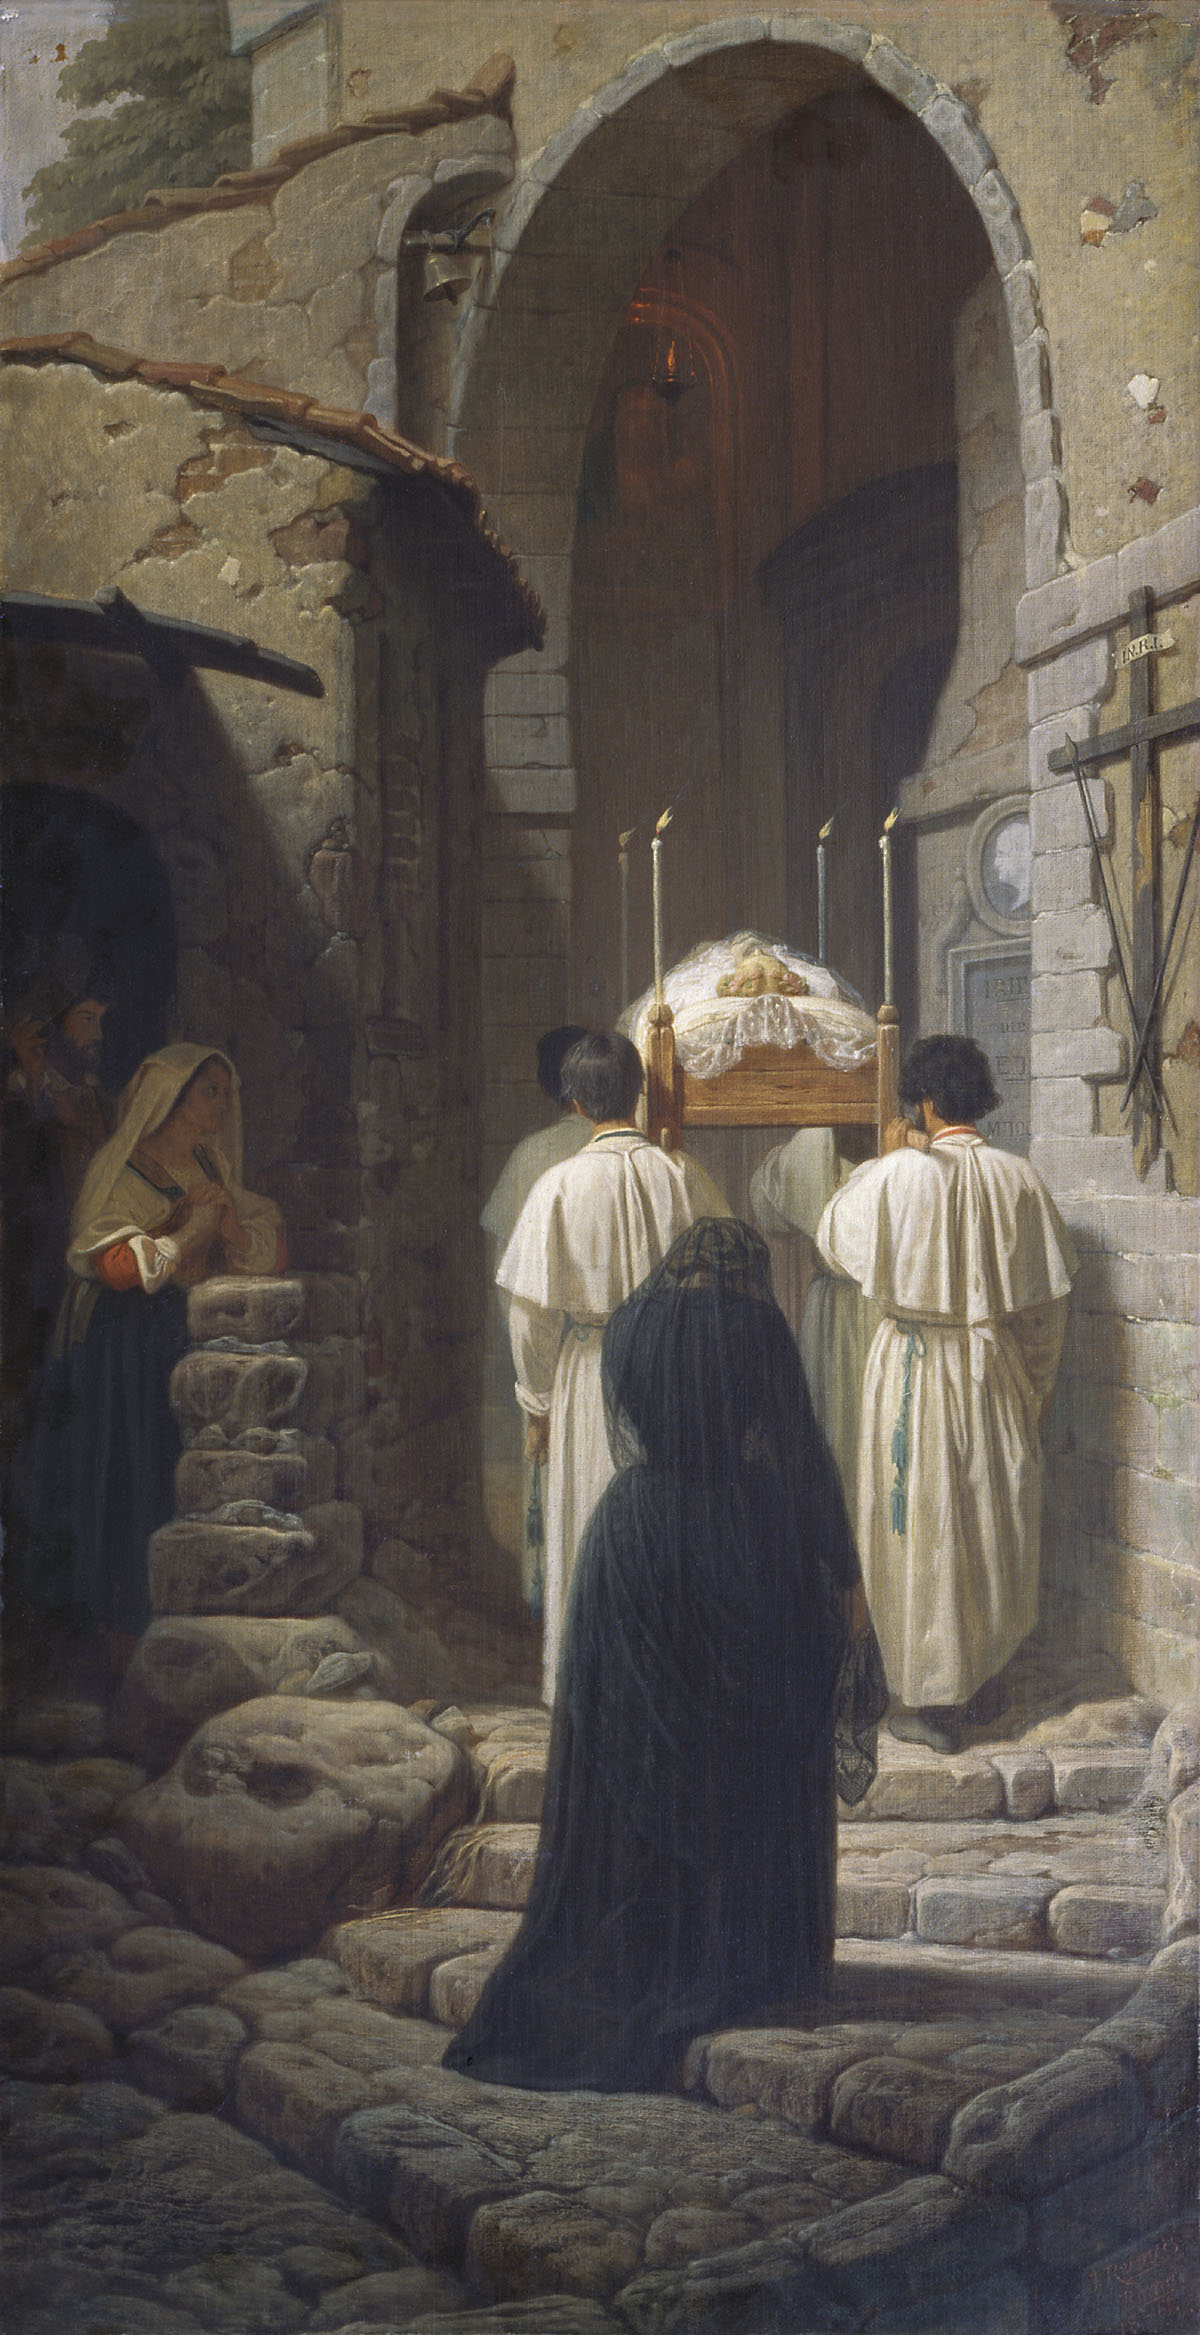 Реймерс. Похороны в Италии. 1861